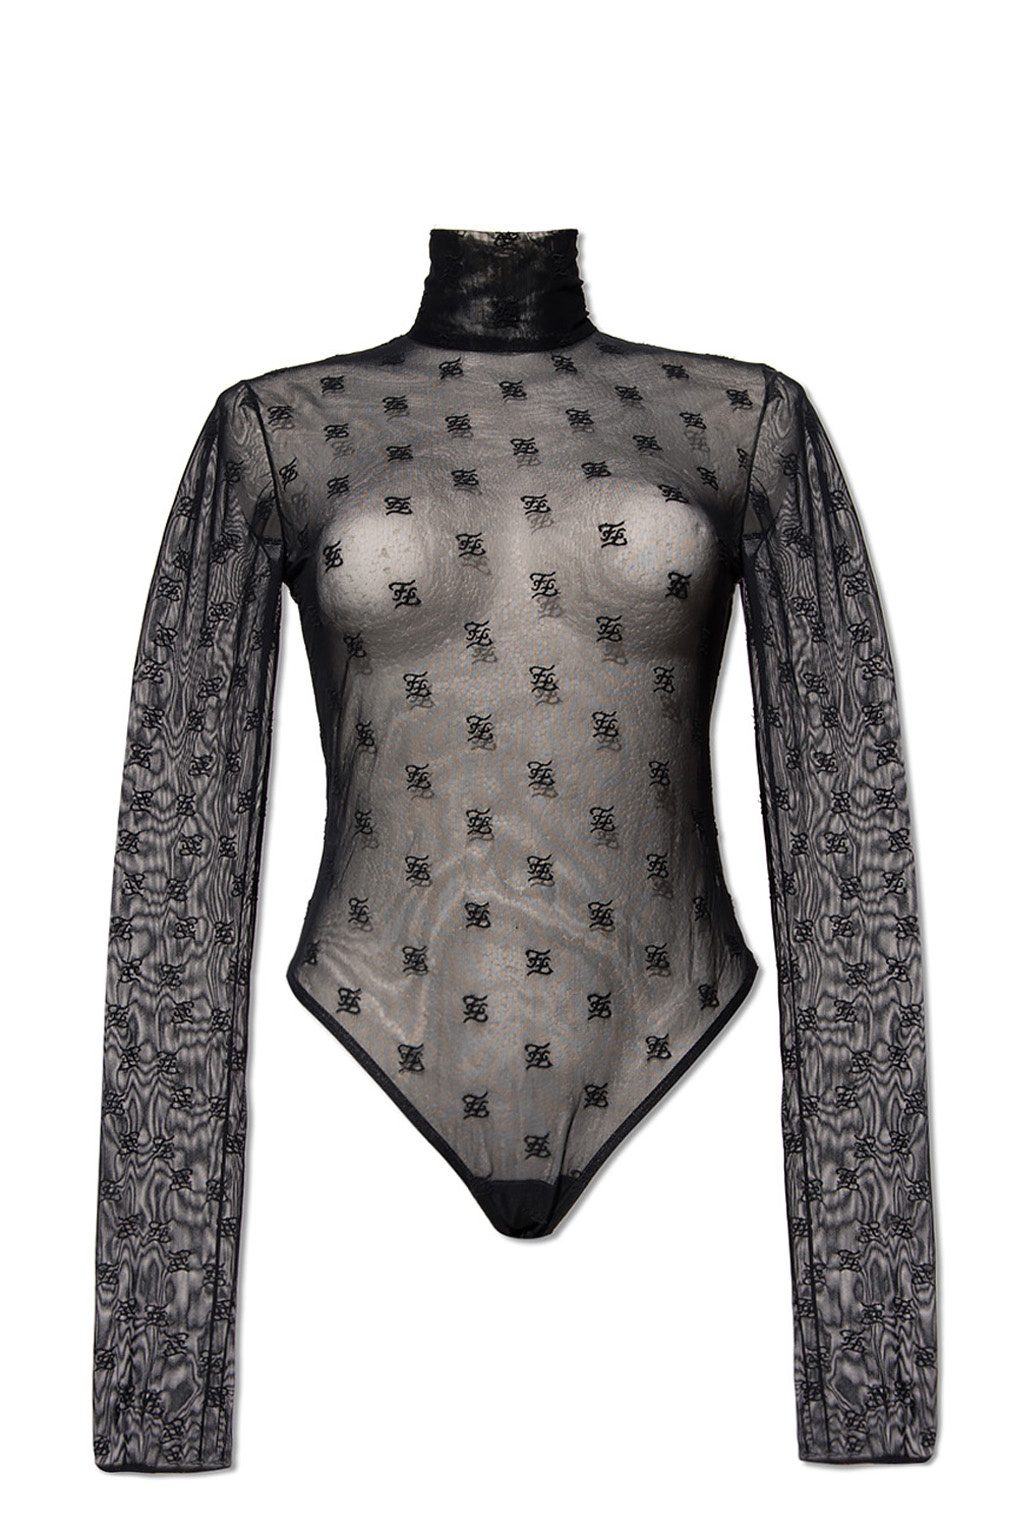 Buy Fendi High-neck Long-sleeved Mesh Bodysuit And Bra Set - Black